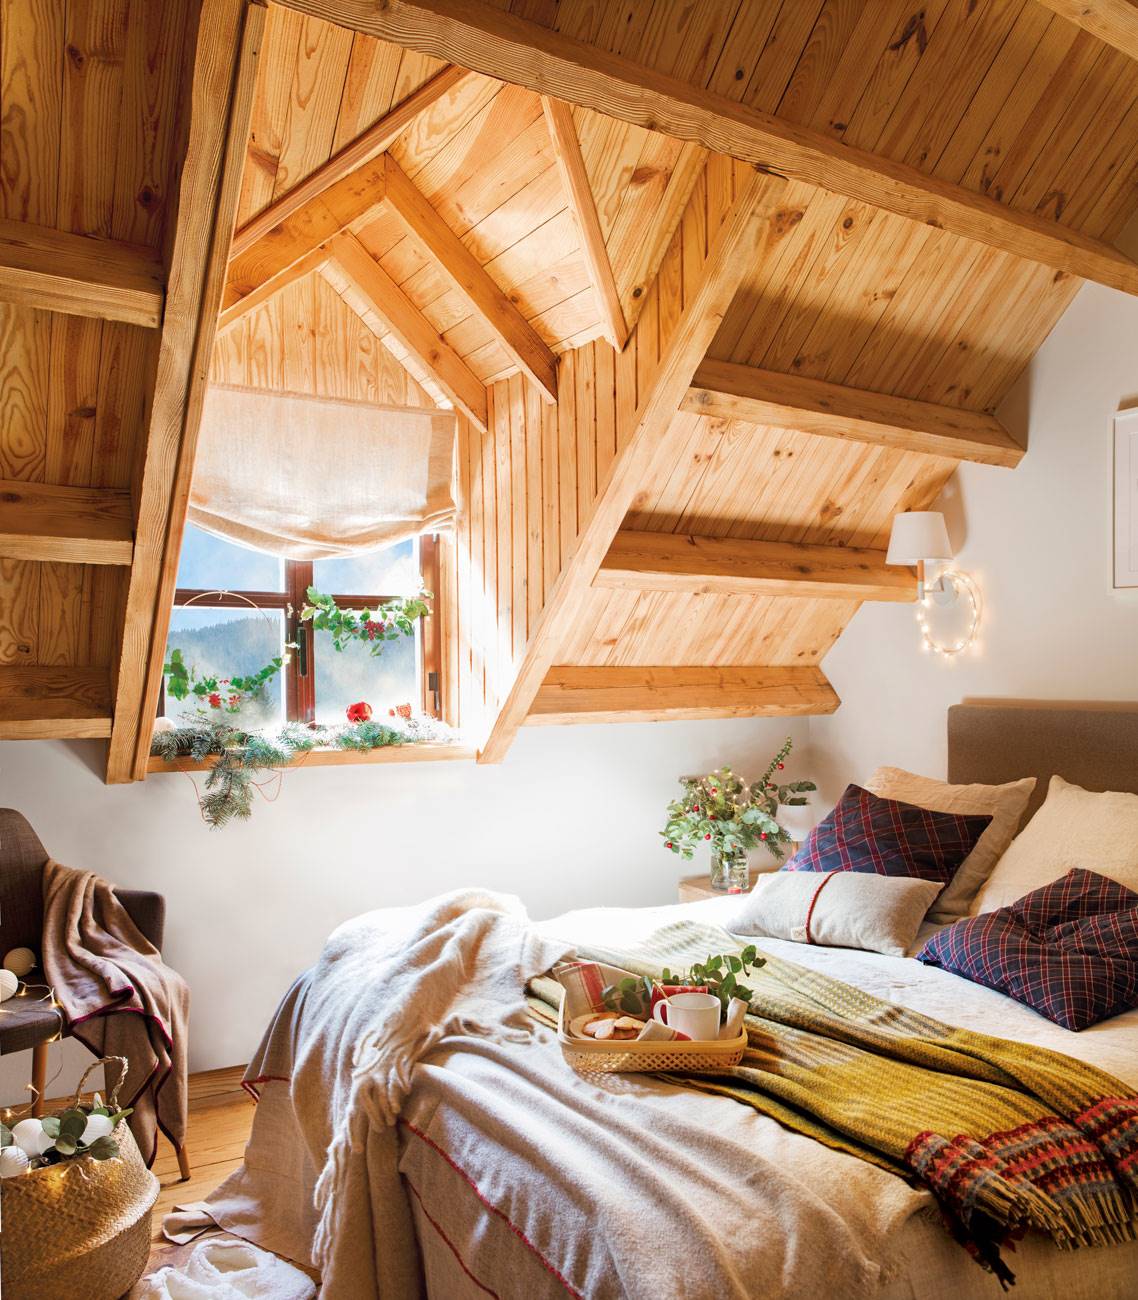 Dormitorio abuhardillado con techo de madera. 